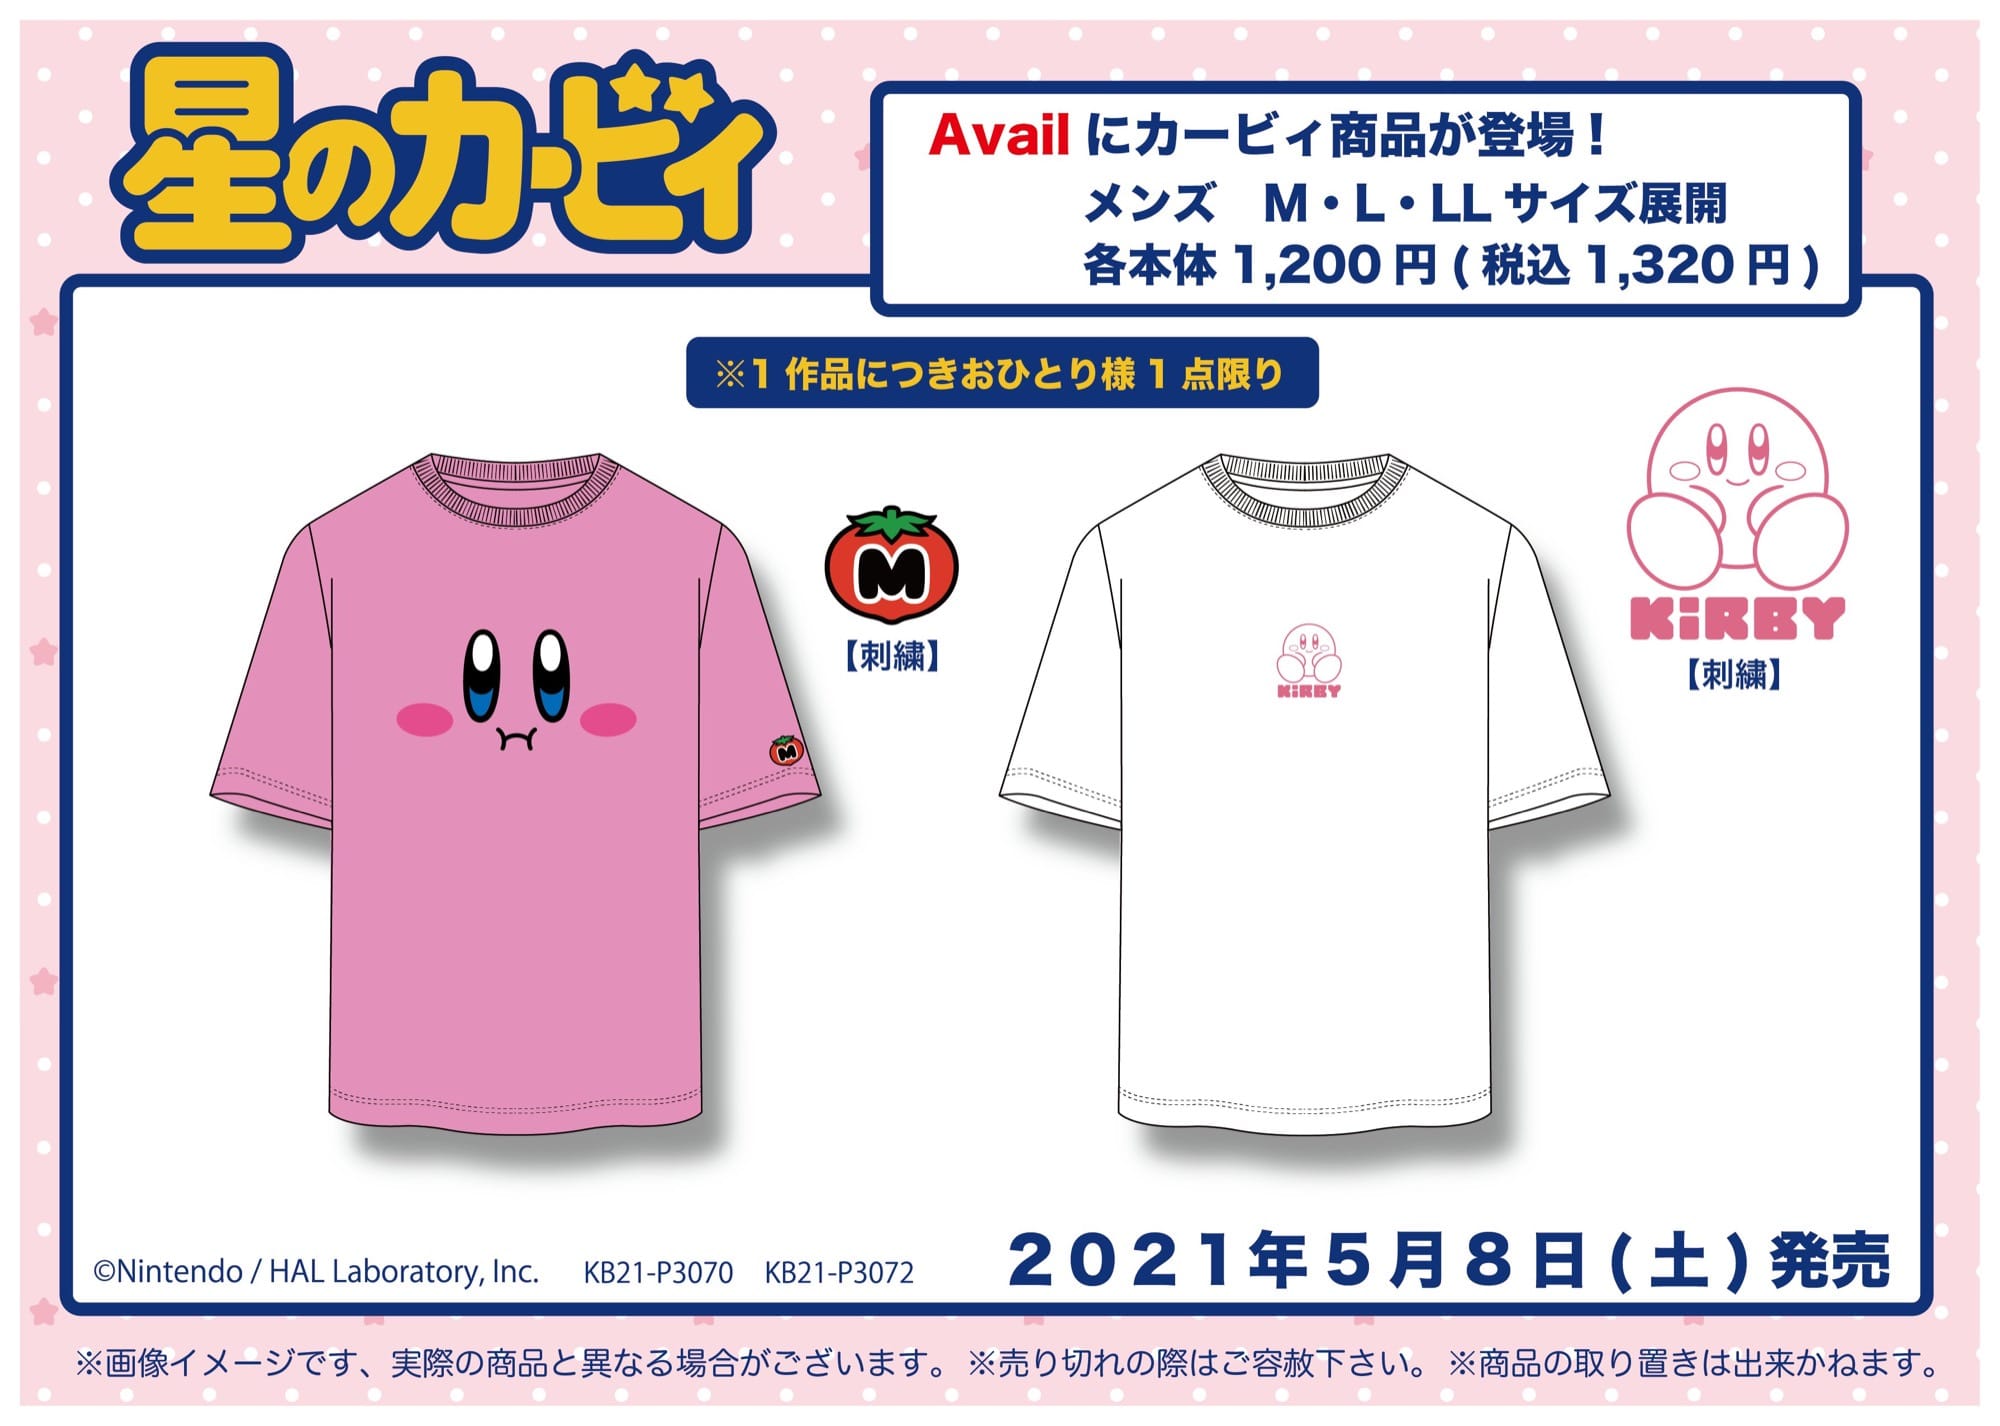 星のカービィ × Avail(アベイル)全国 5月8日よりTシャツ新発売!